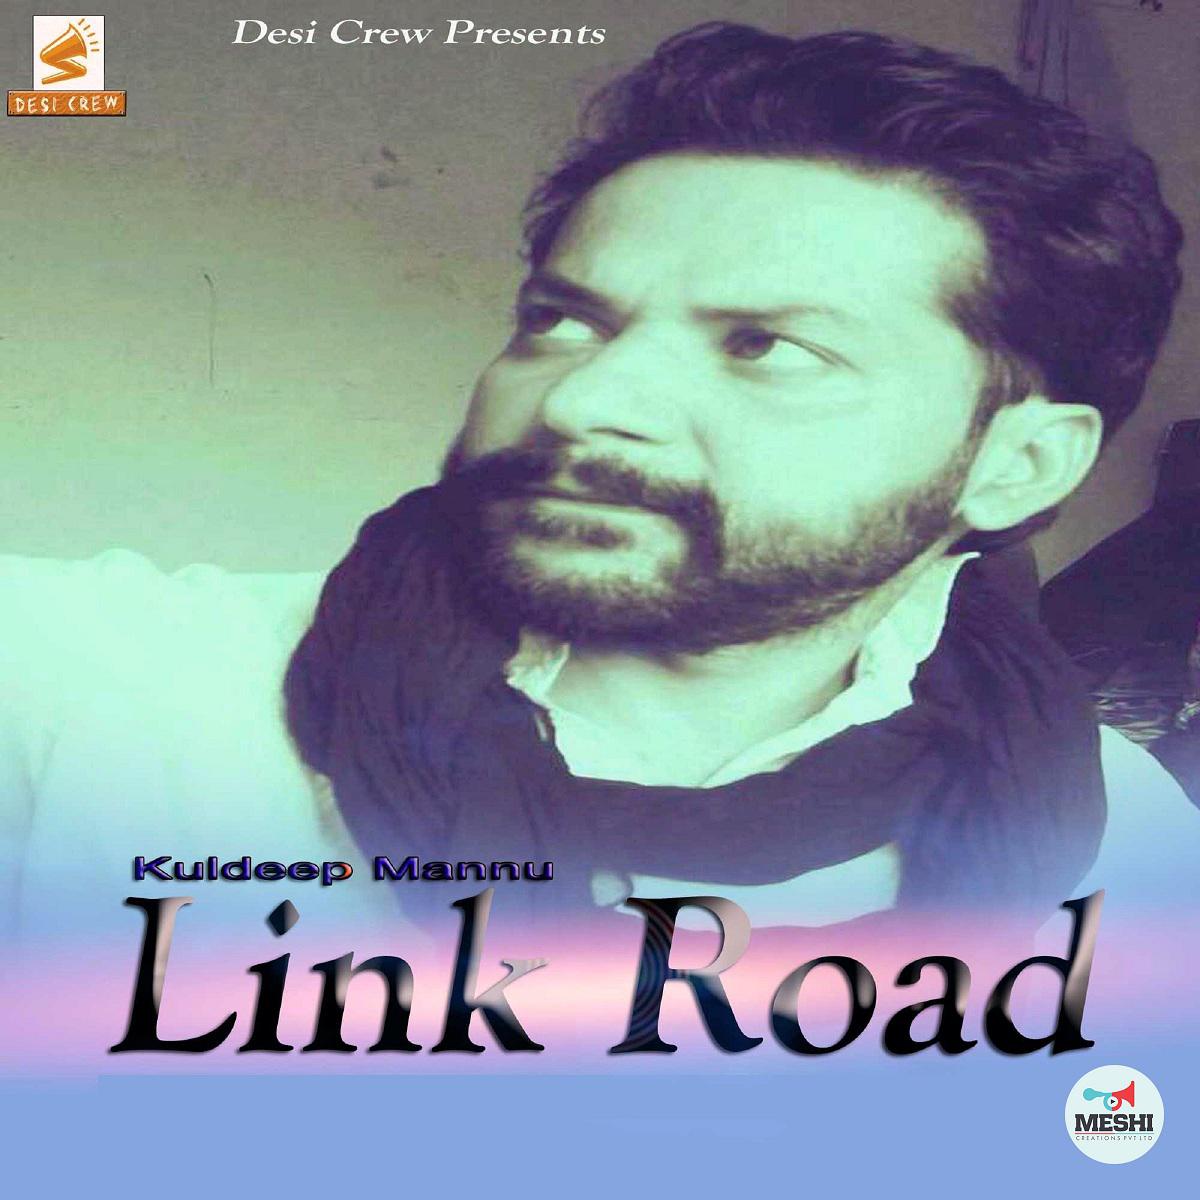 Link Road